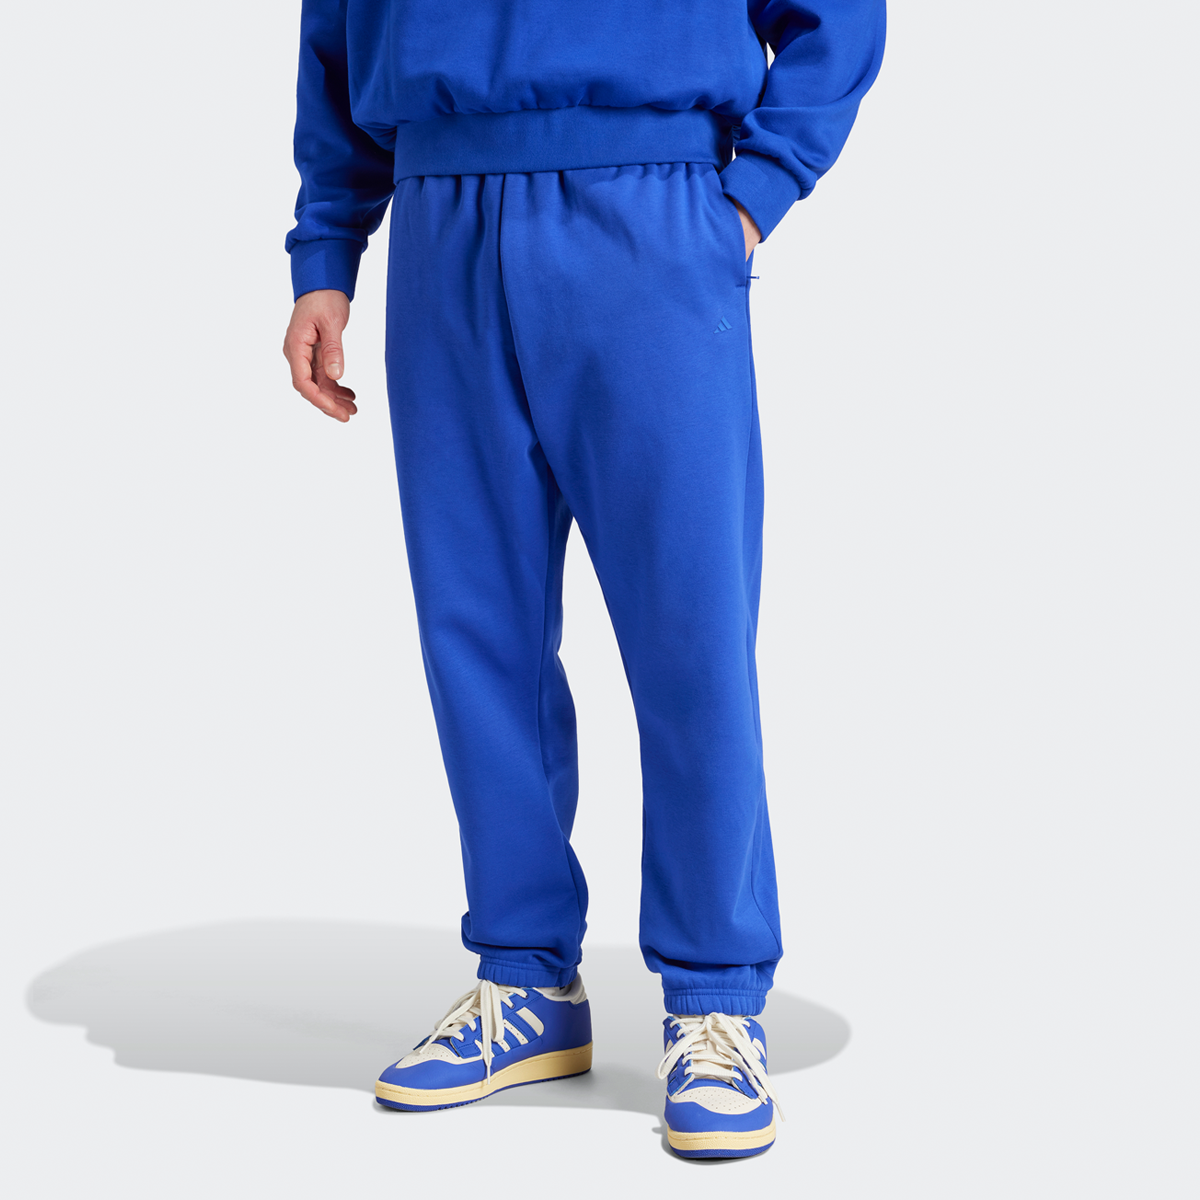 Adidas Originals Basketball Fleece Jogging Broek Trainingsbroeken Heren lucid blue maat: XL beschikbare maaten:S M L XL